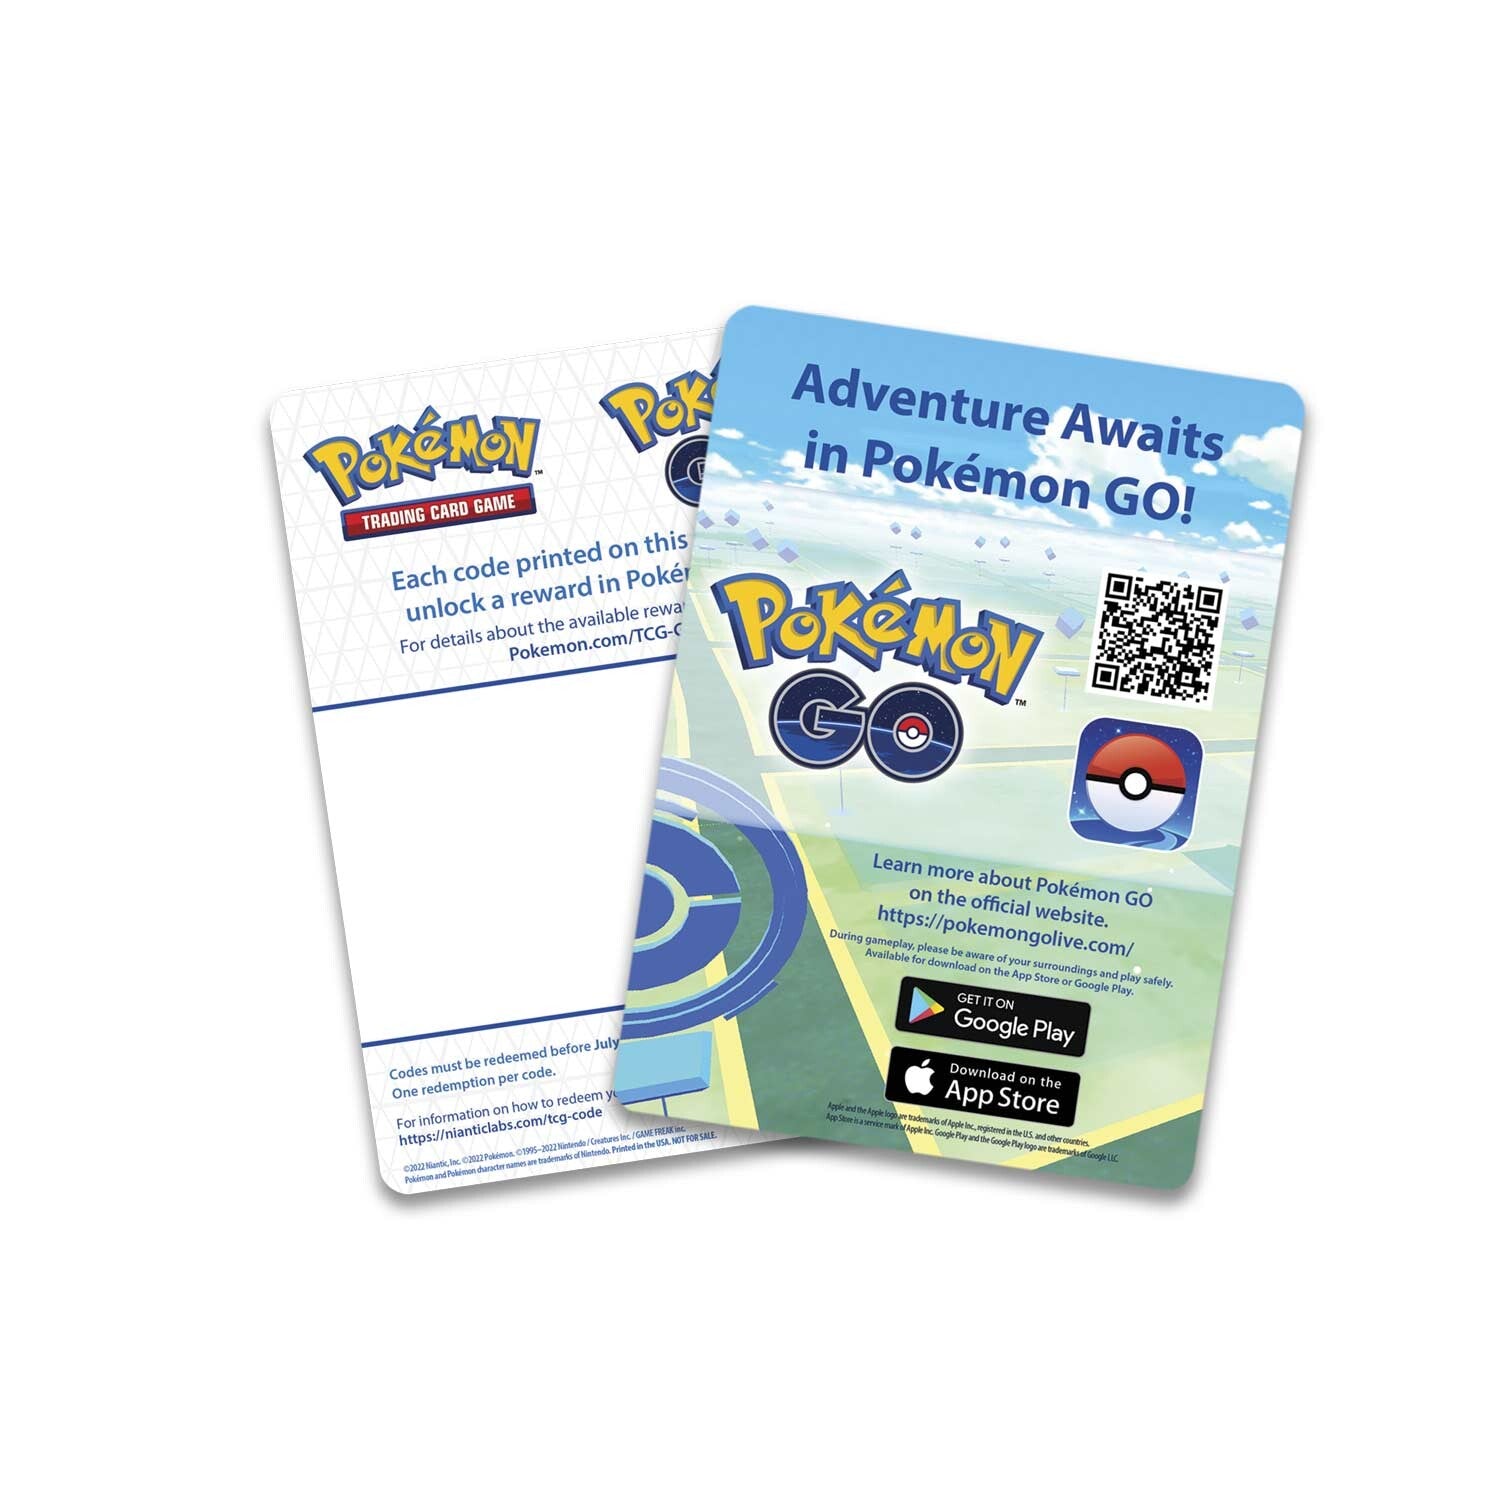 Box Pokémon GO Premium Eevee Radiante